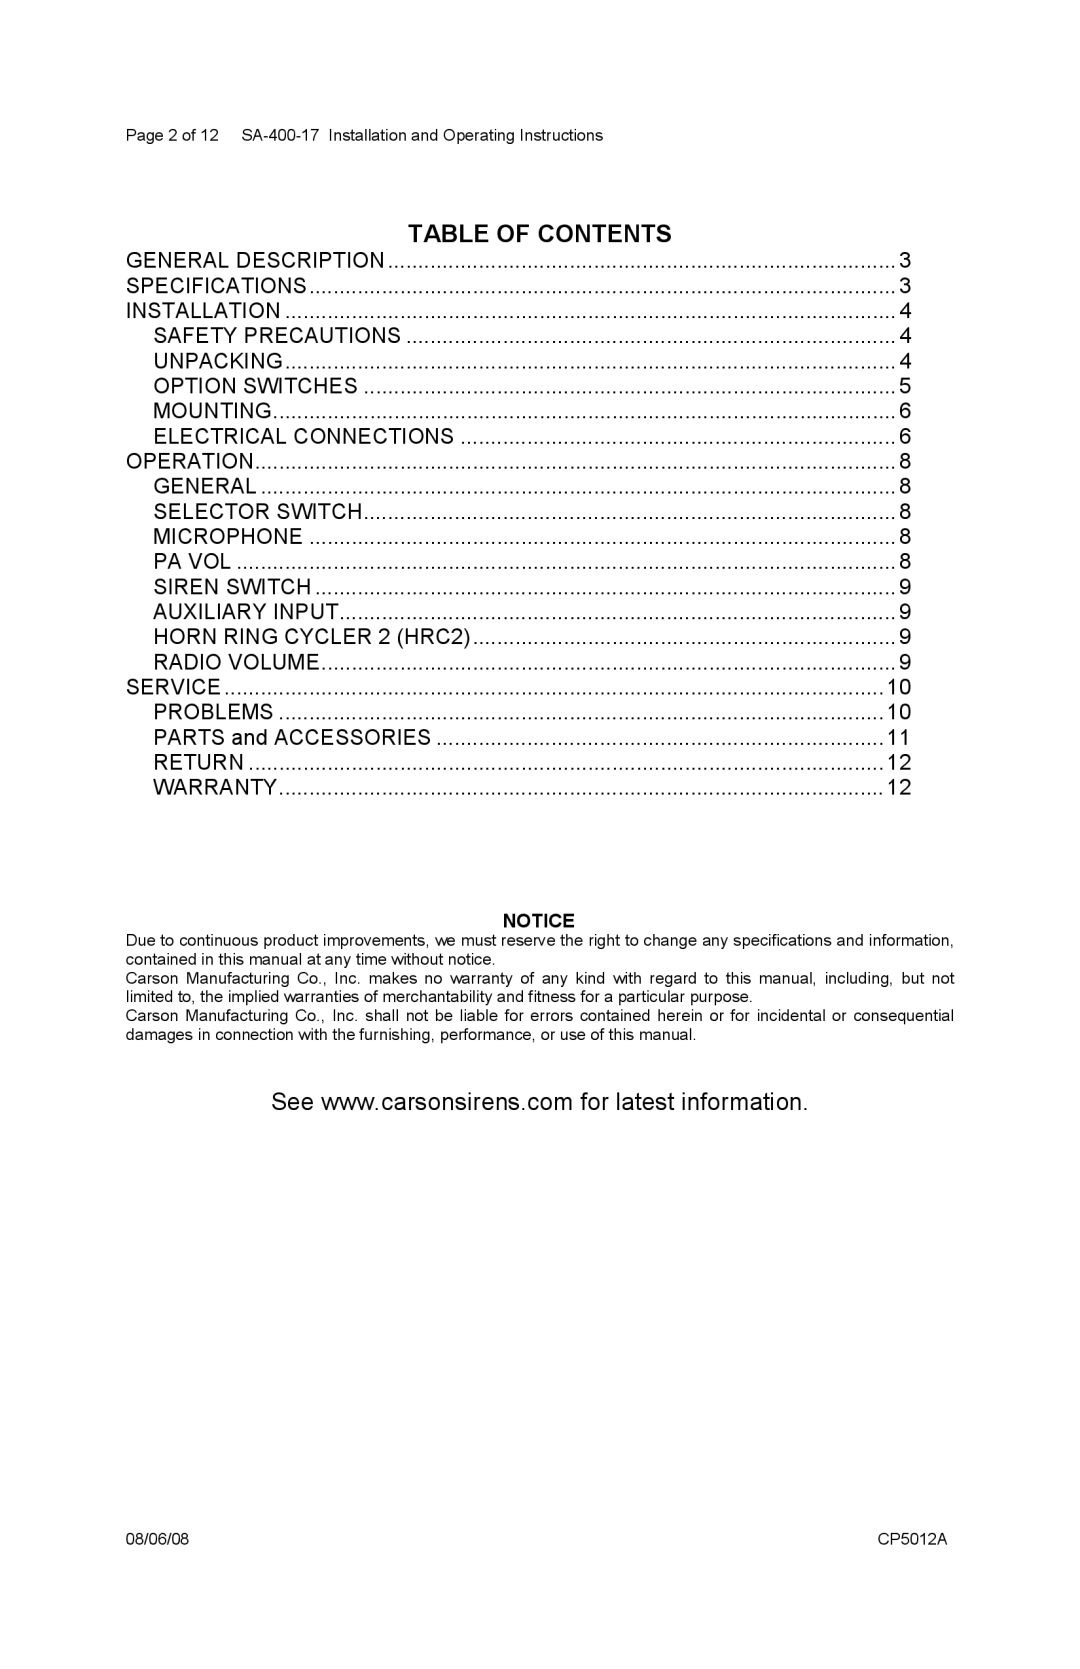 Carson SA-400-17 manual Table Of Contents 